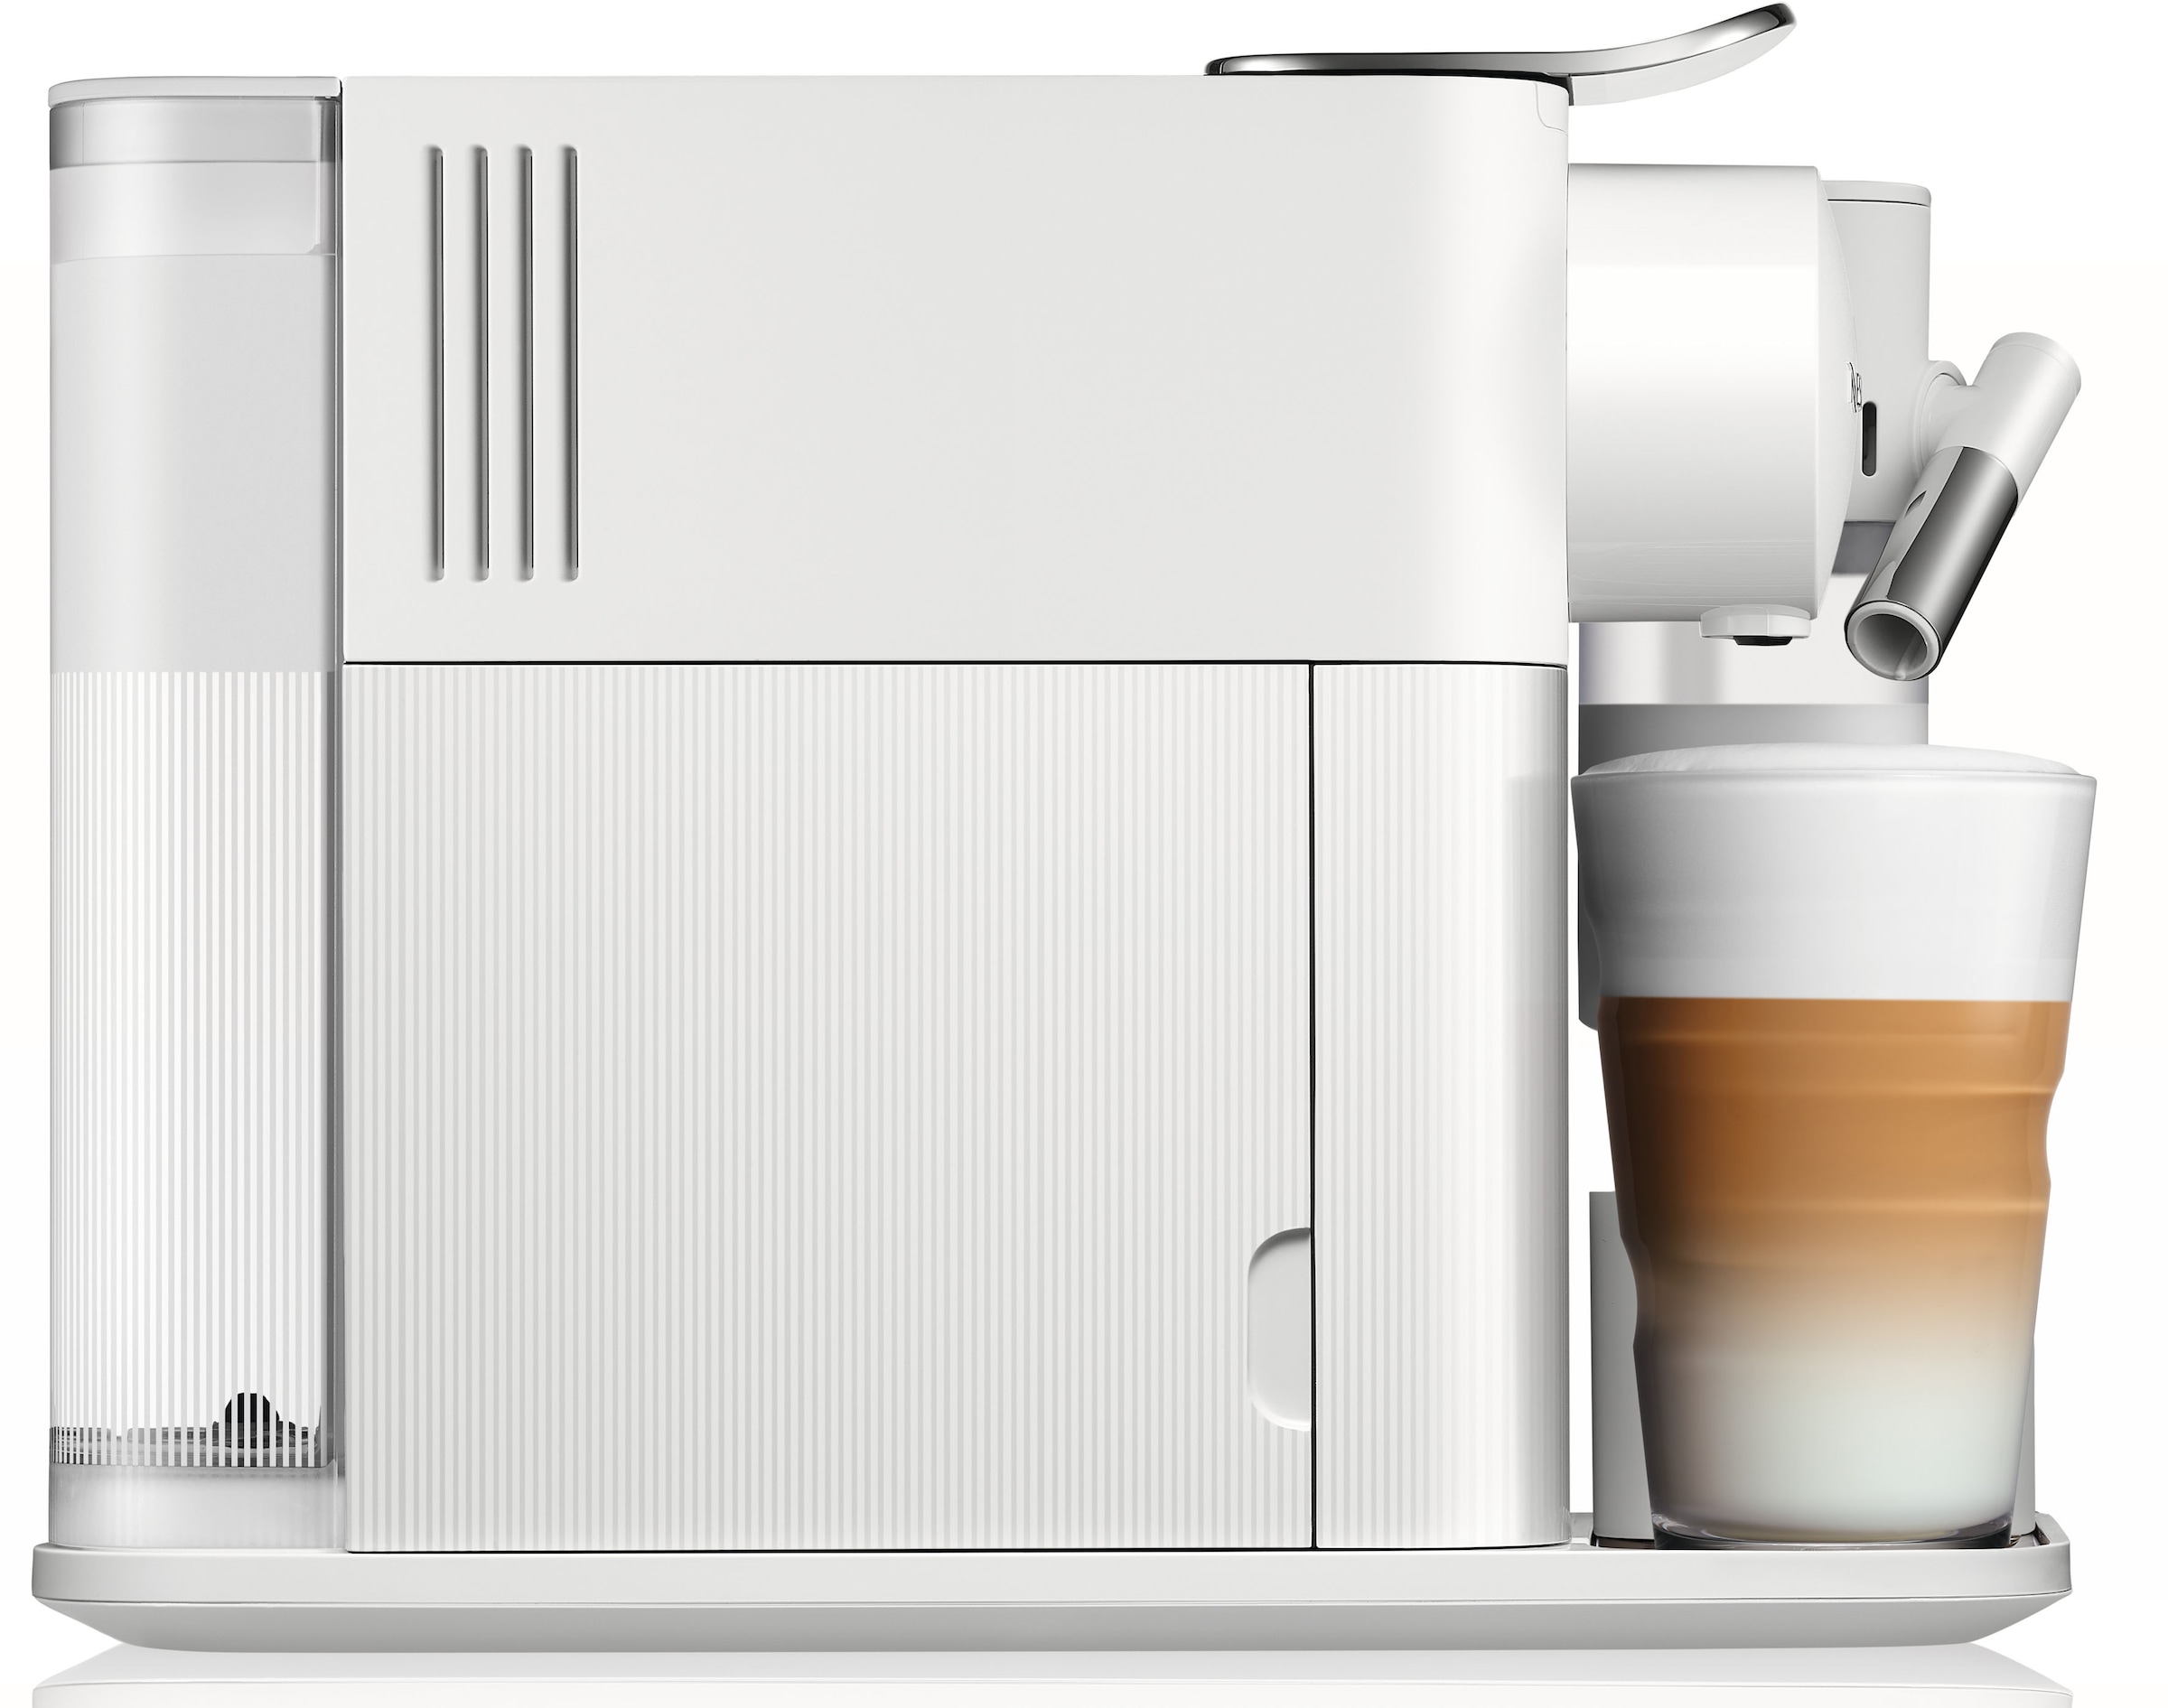 Nespresso Kapselmaschine »Lattissima One EN510.W von DeLonghi, White«, inkl. Willkommenspaket mit 7 Kapseln